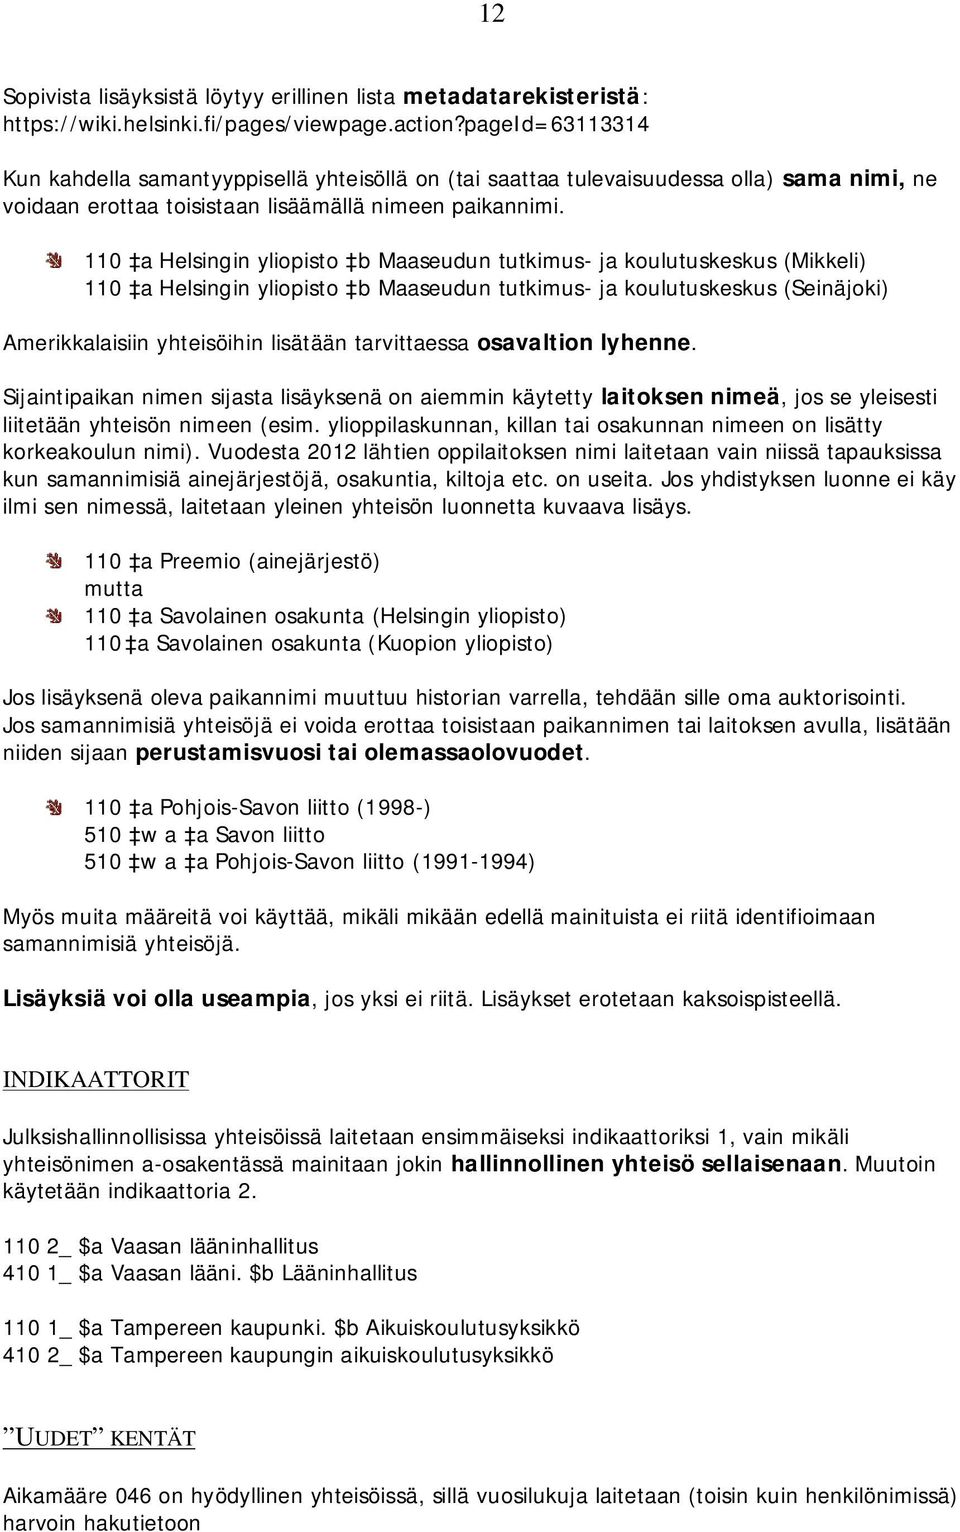 110 a Helsingin yliopisto b Maaseudun tutkimus- ja koulutuskeskus (Mikkeli) 110 a Helsingin yliopisto b Maaseudun tutkimus- ja koulutuskeskus (Seinäjoki) Amerikkalaisiin yhteisöihin lisätään